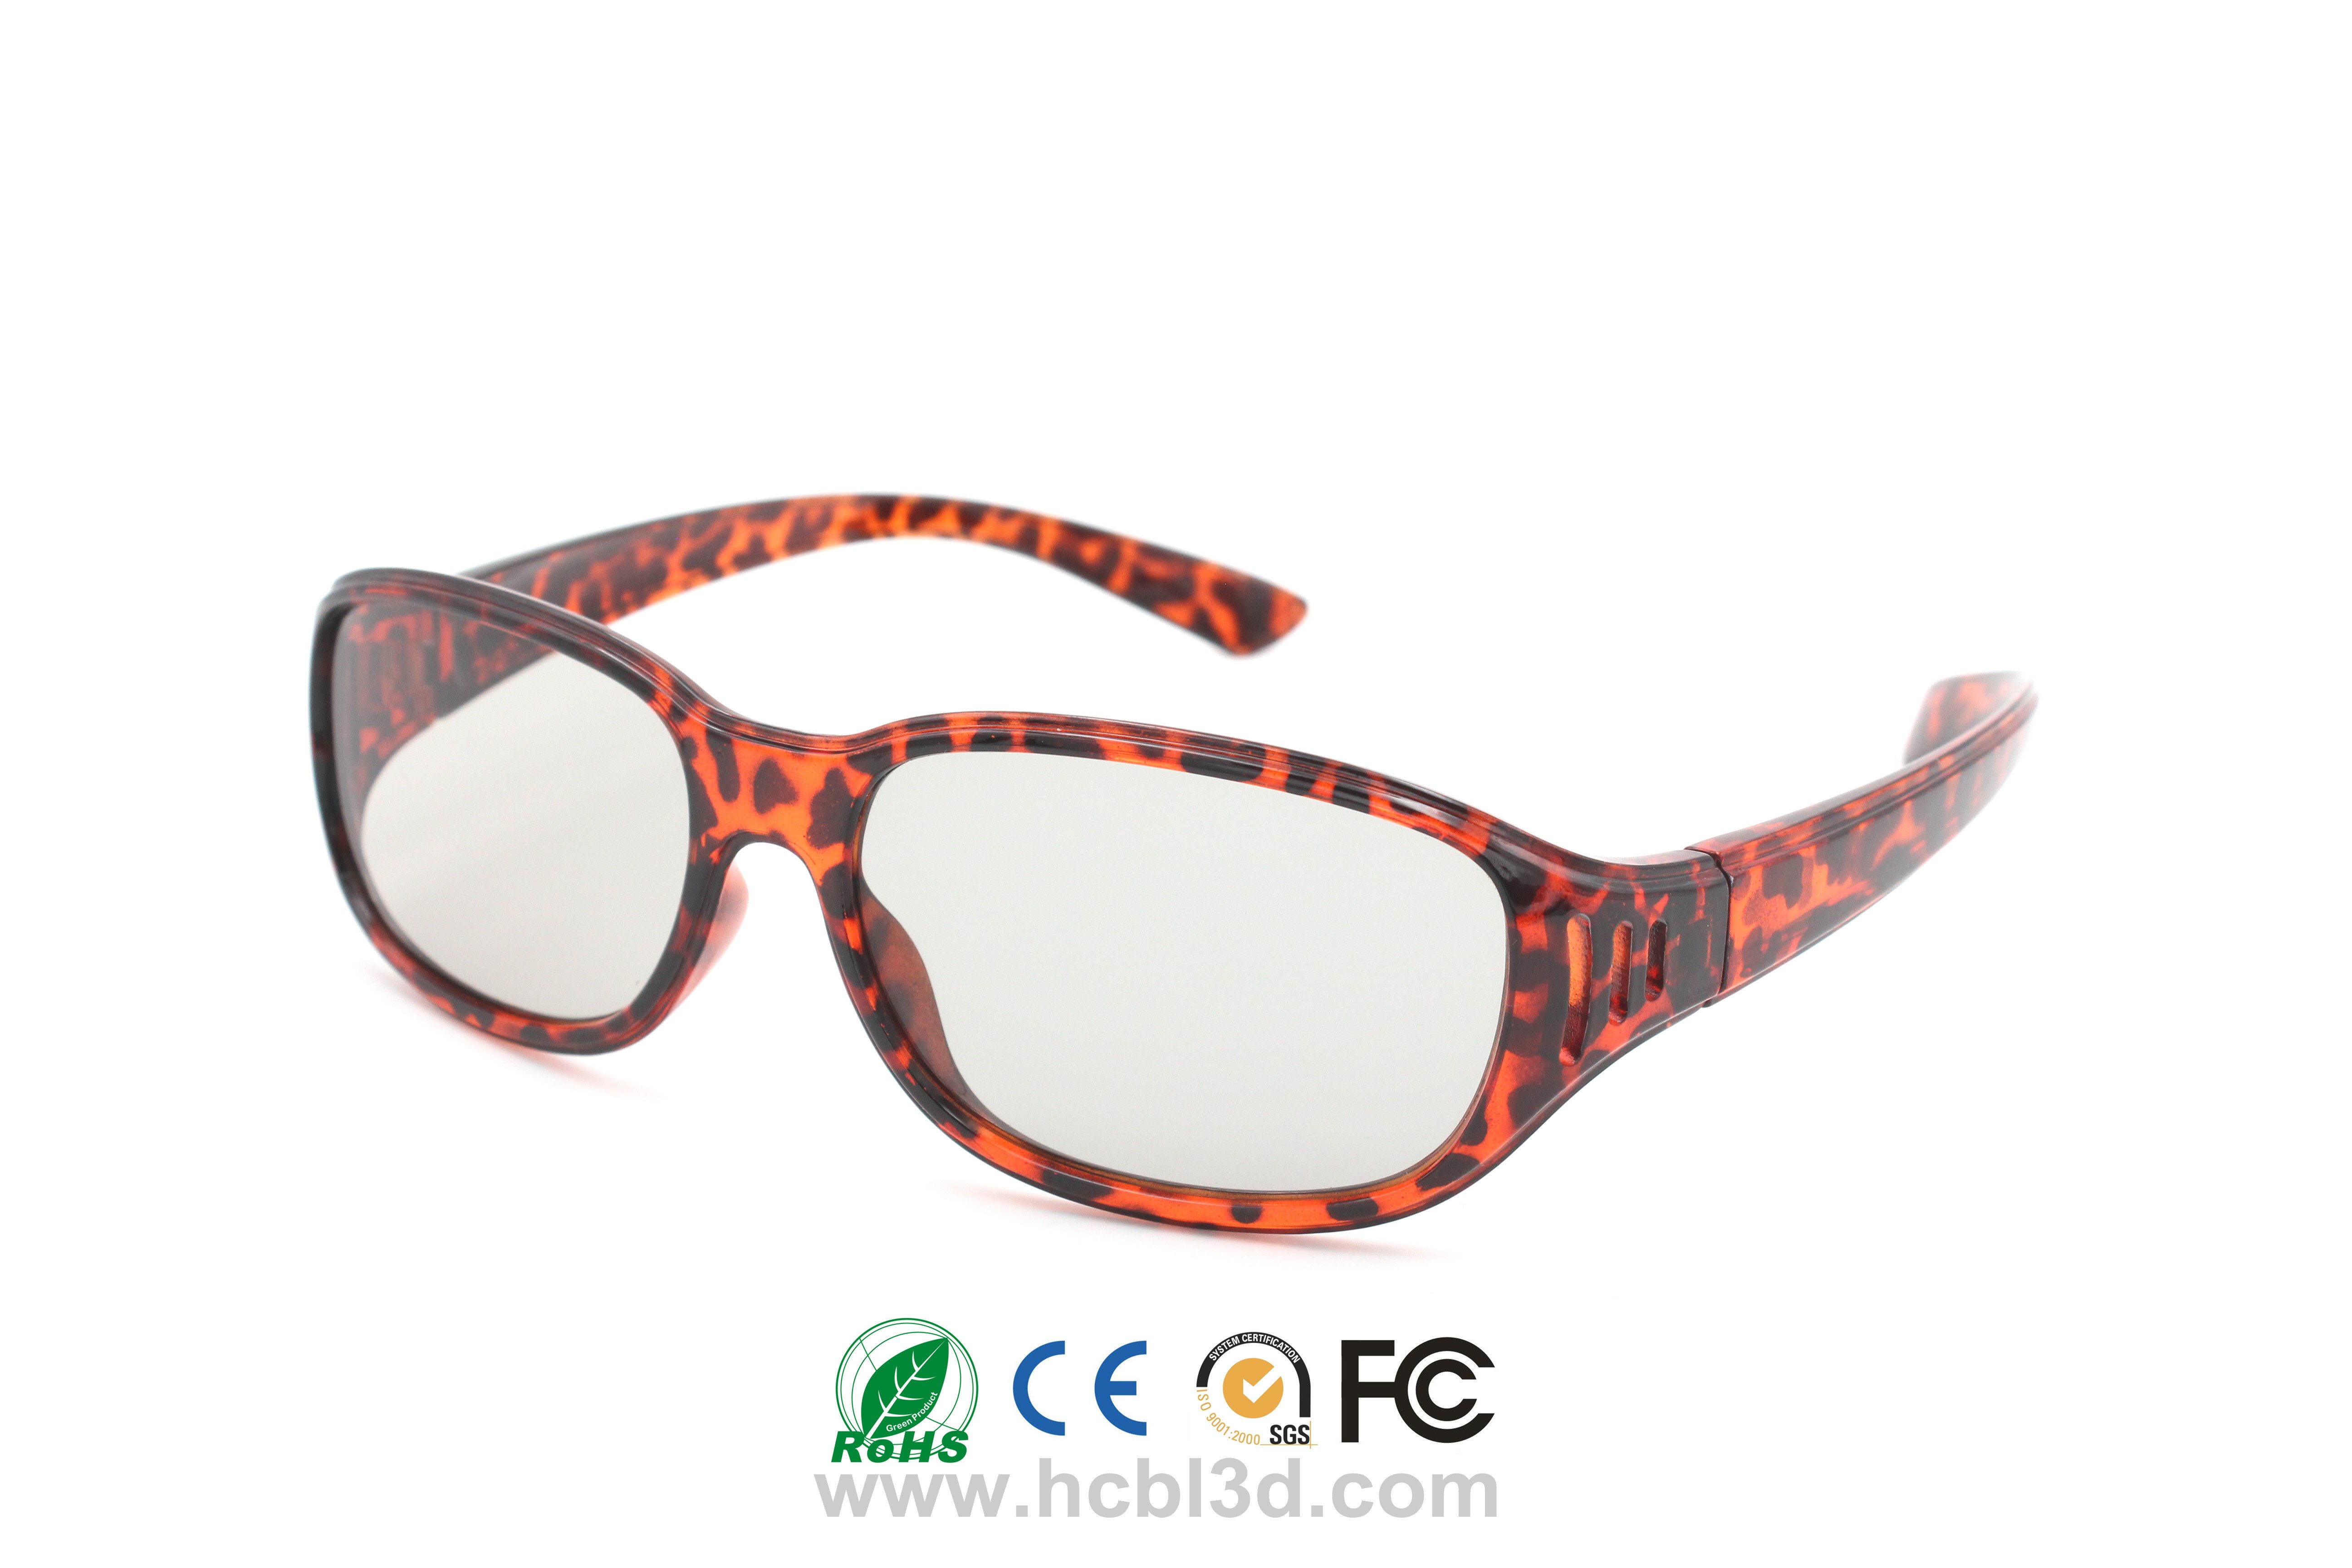 Mehrfach verwendbare 3D-Brille für 3D-Kino Red Panther Design Wiederverwendbar